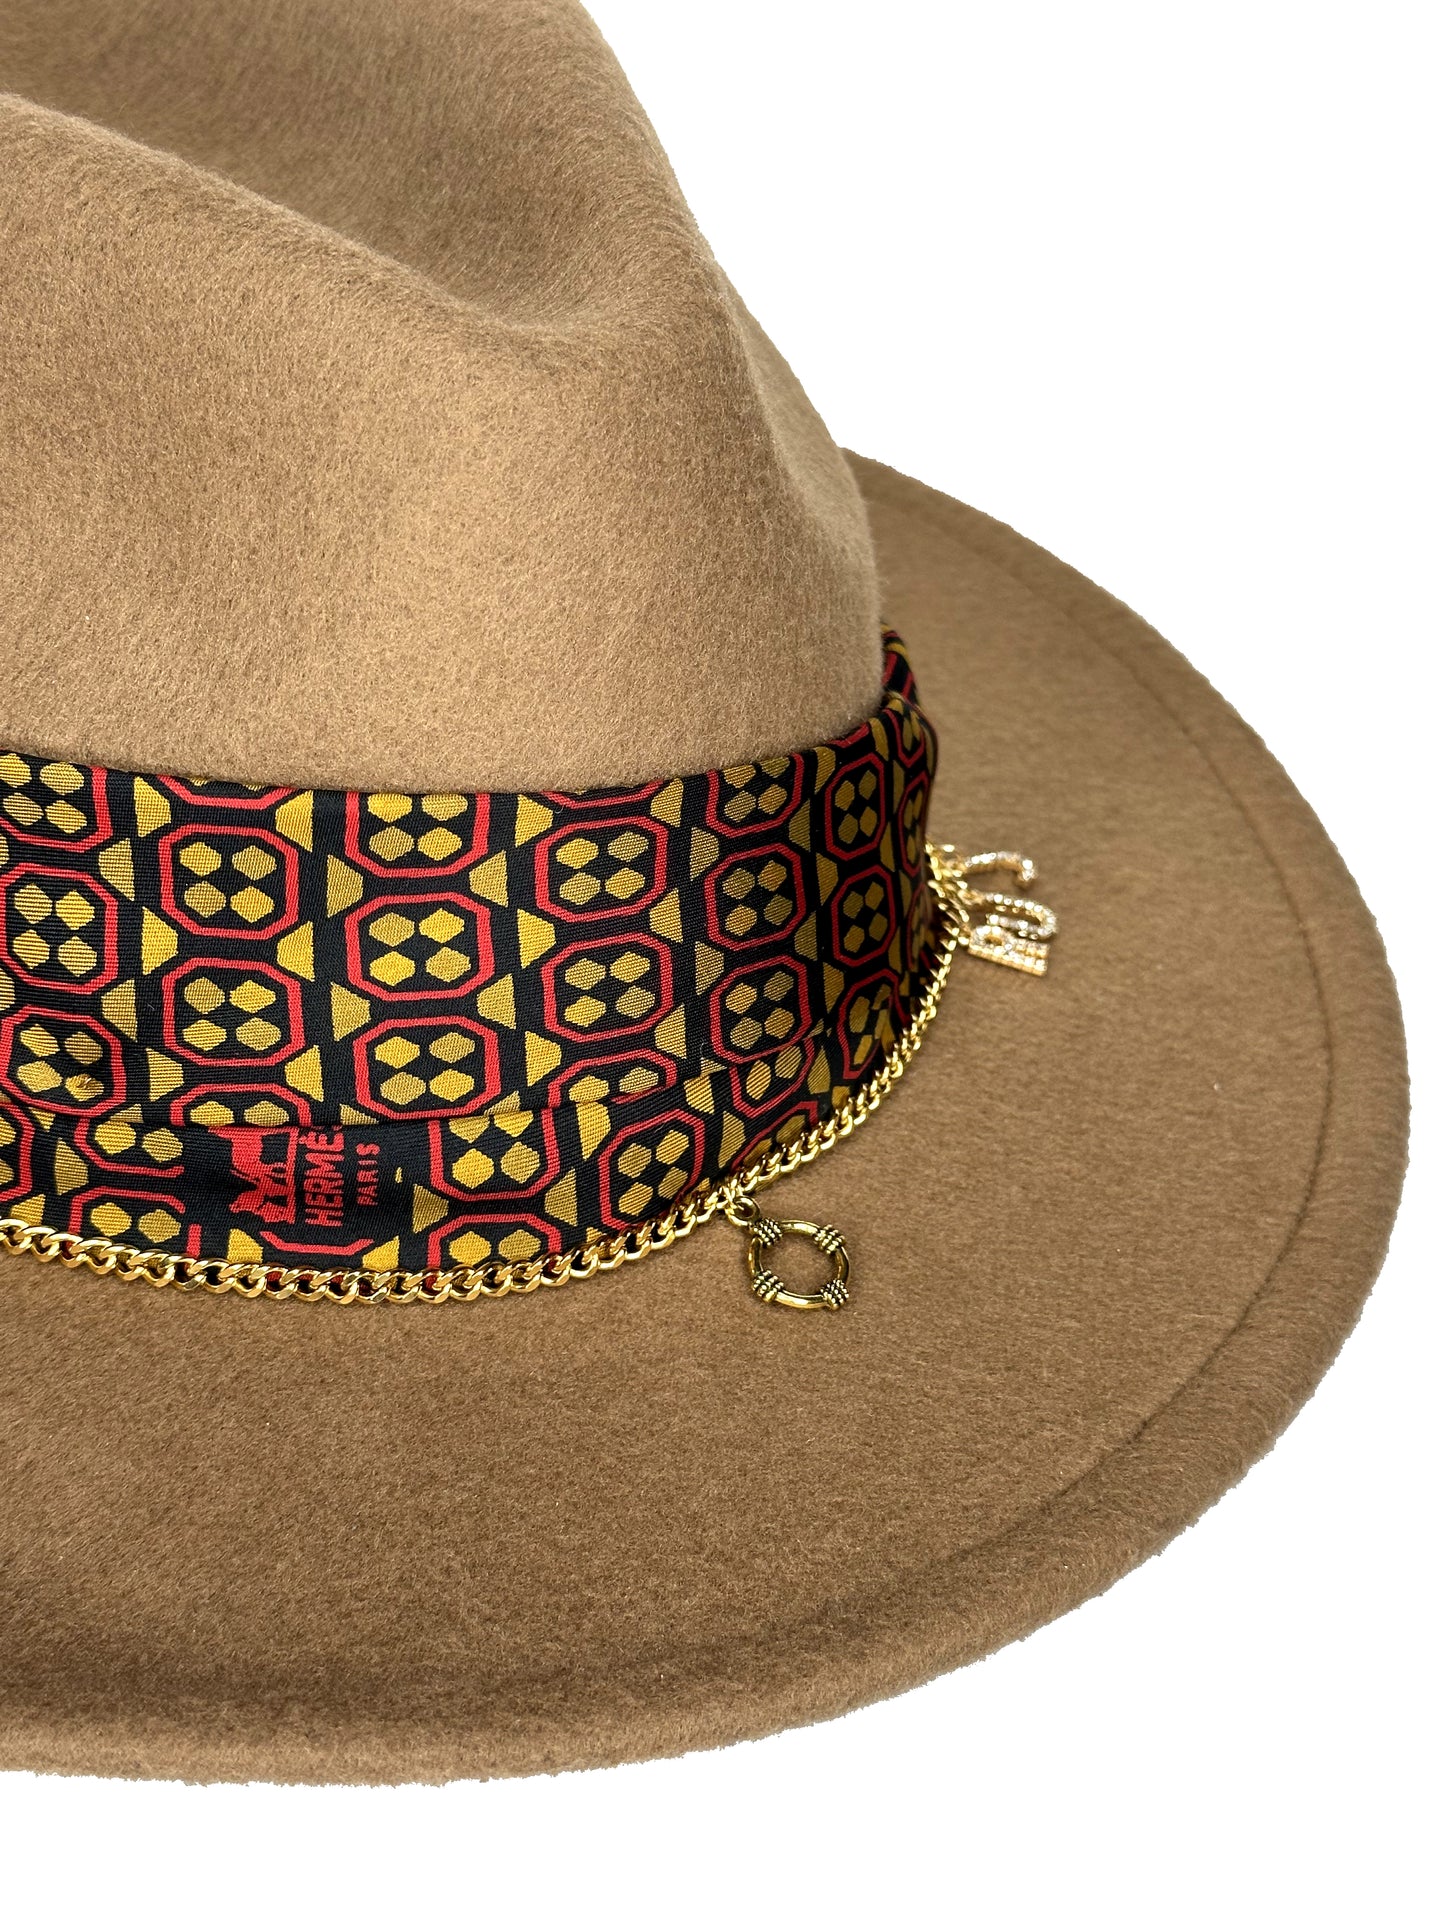 Arizona Hat Hermes